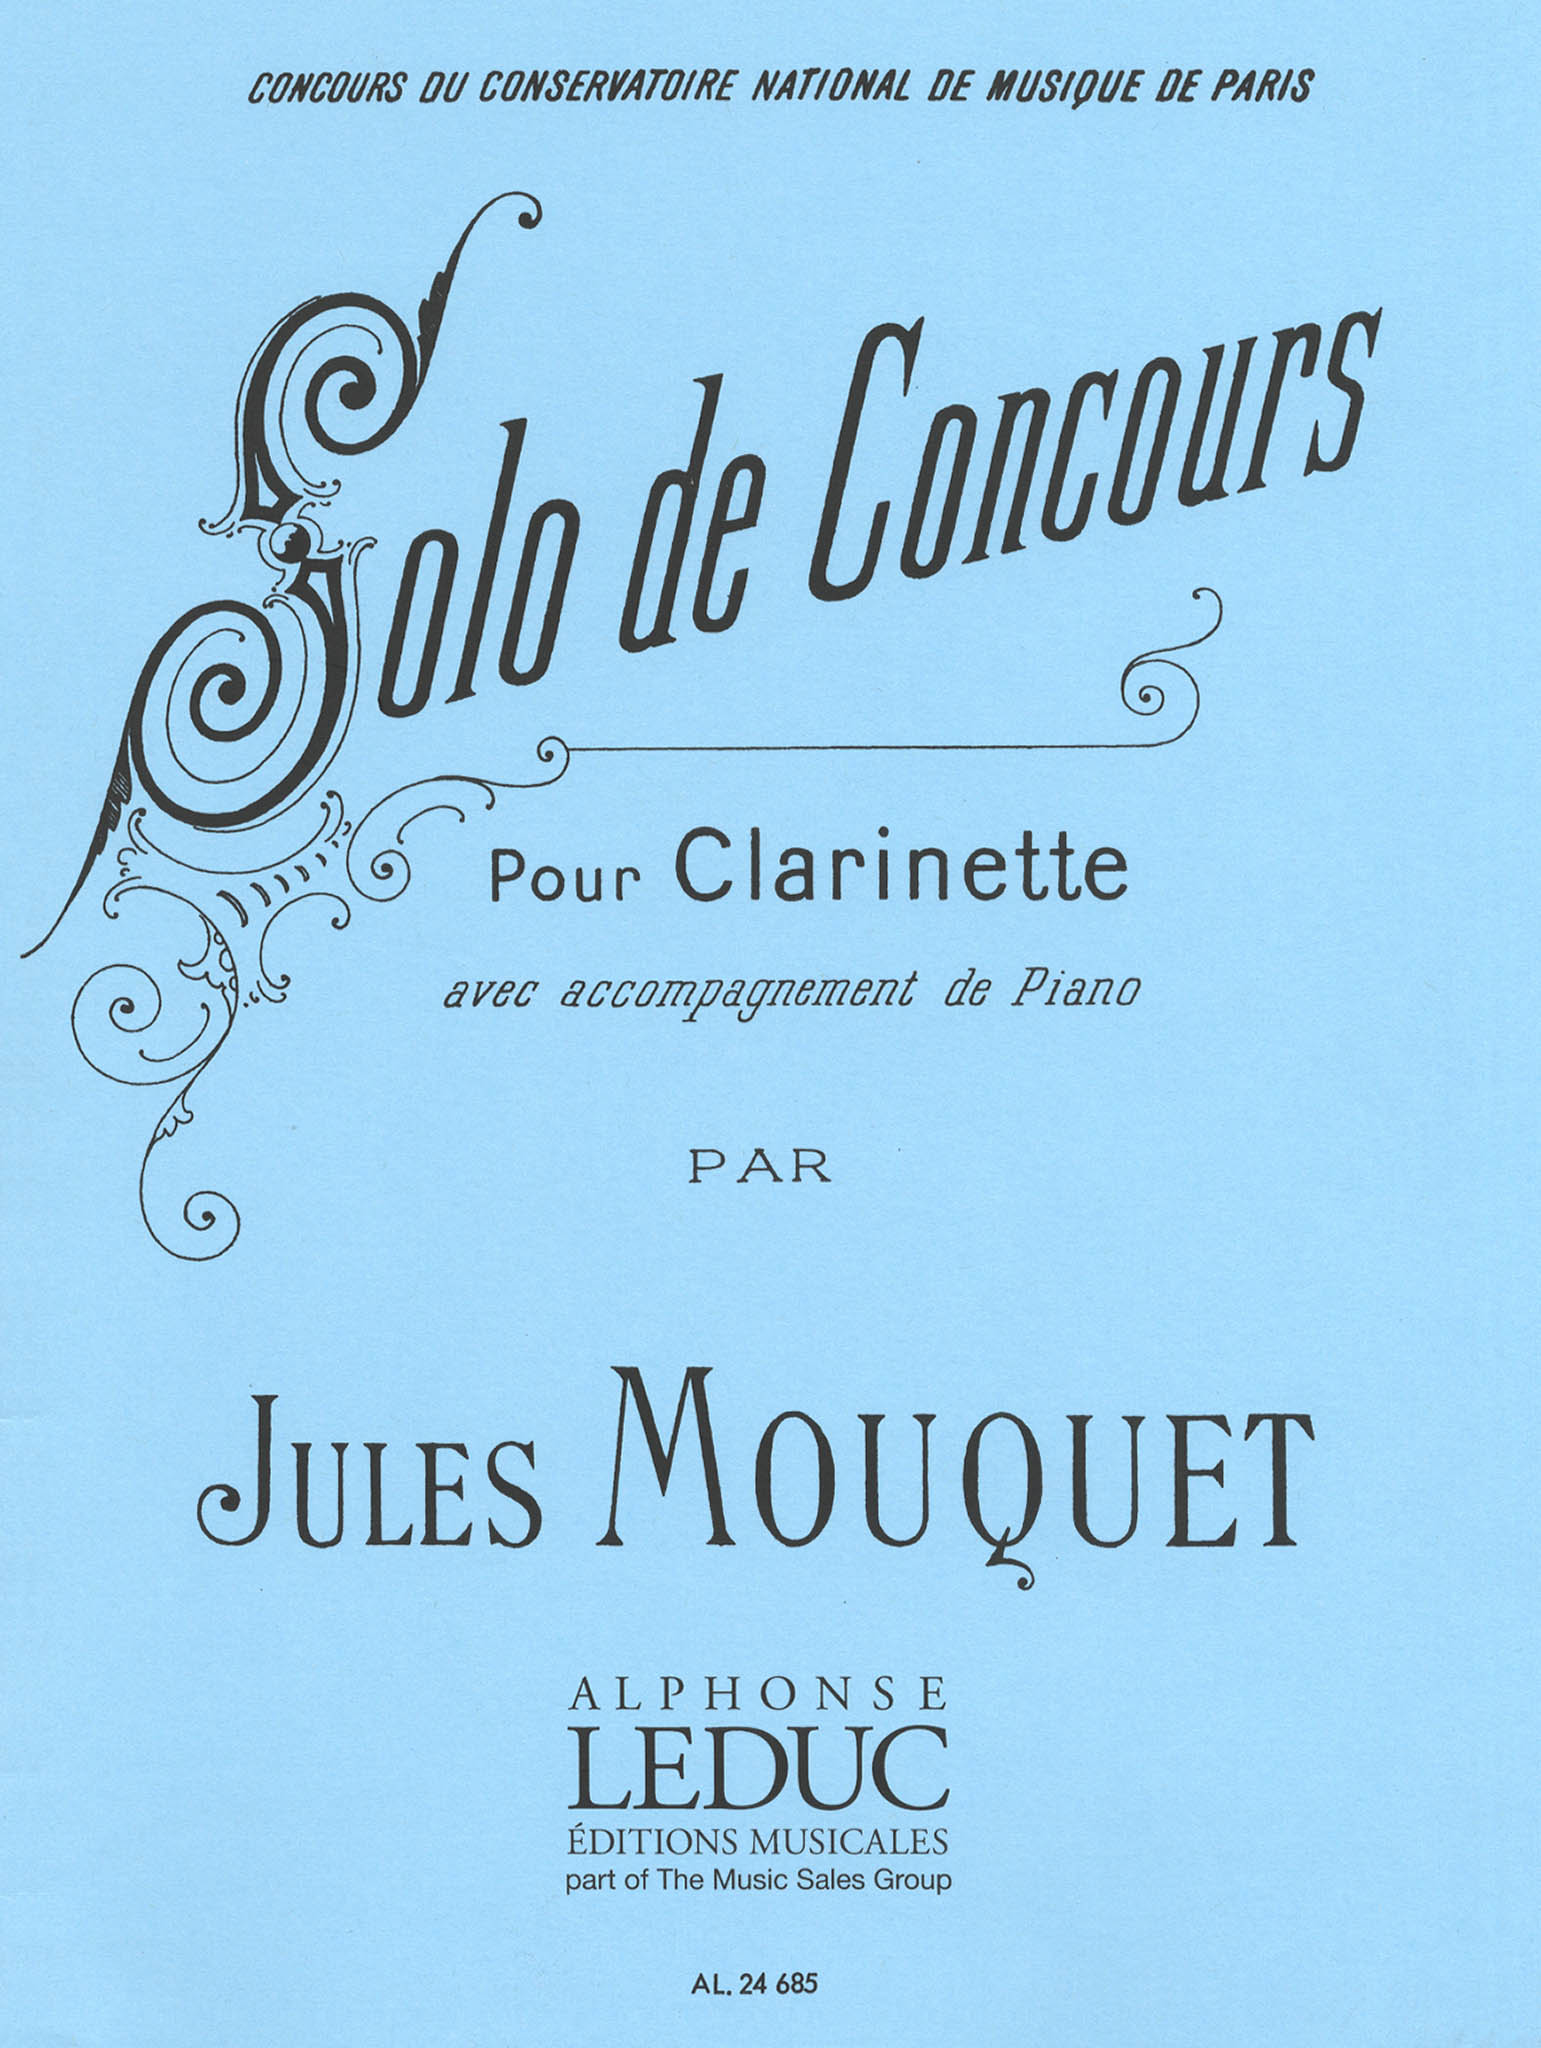 Mouquet Solo de Concours Cover